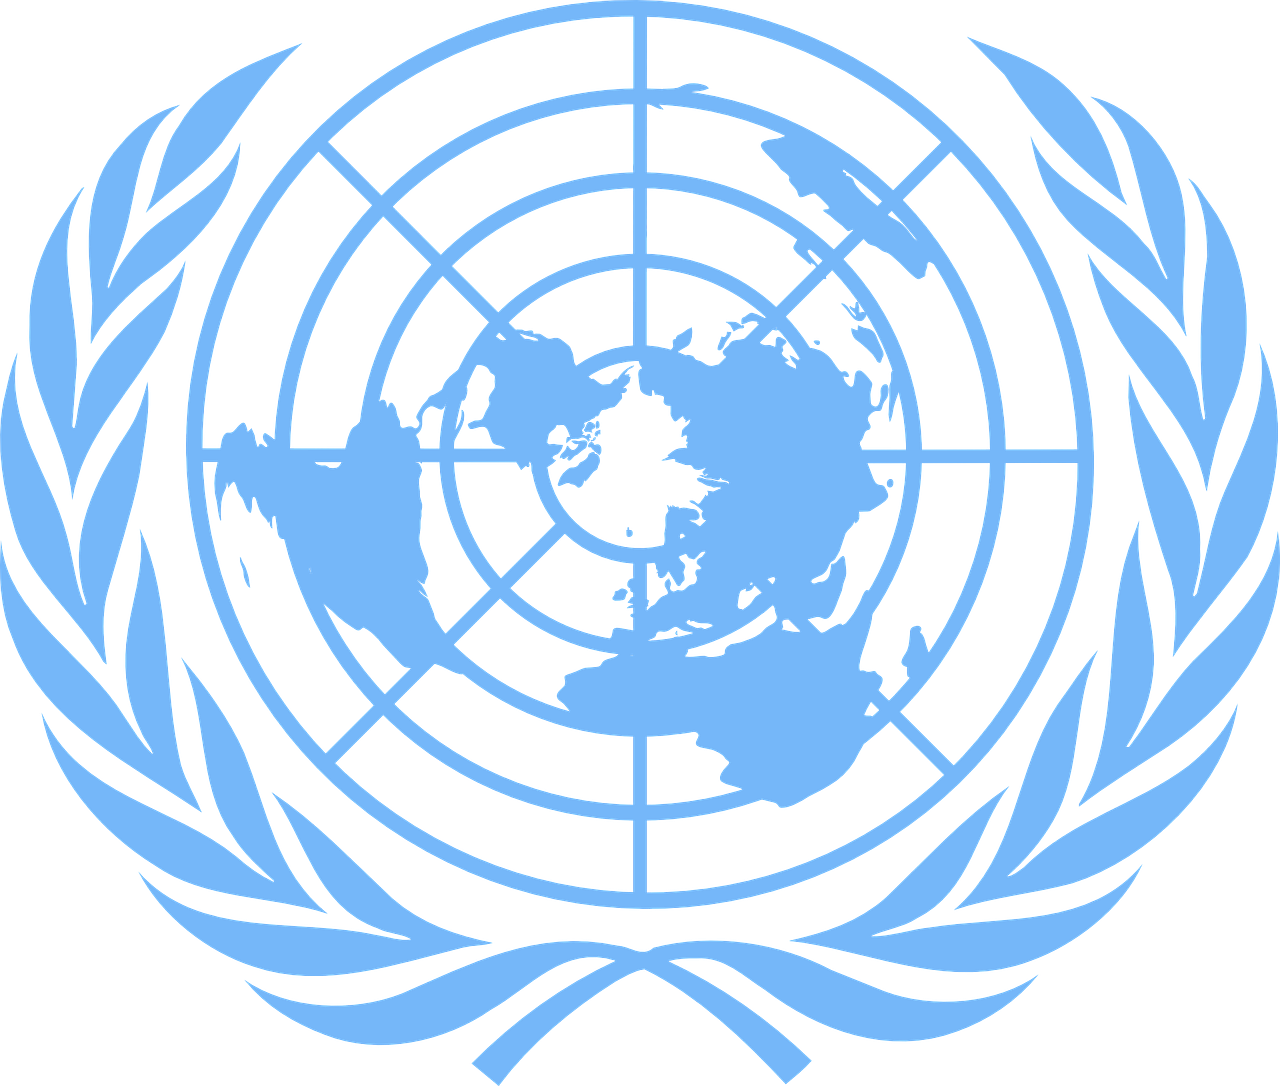 united nations emblem logo free photo